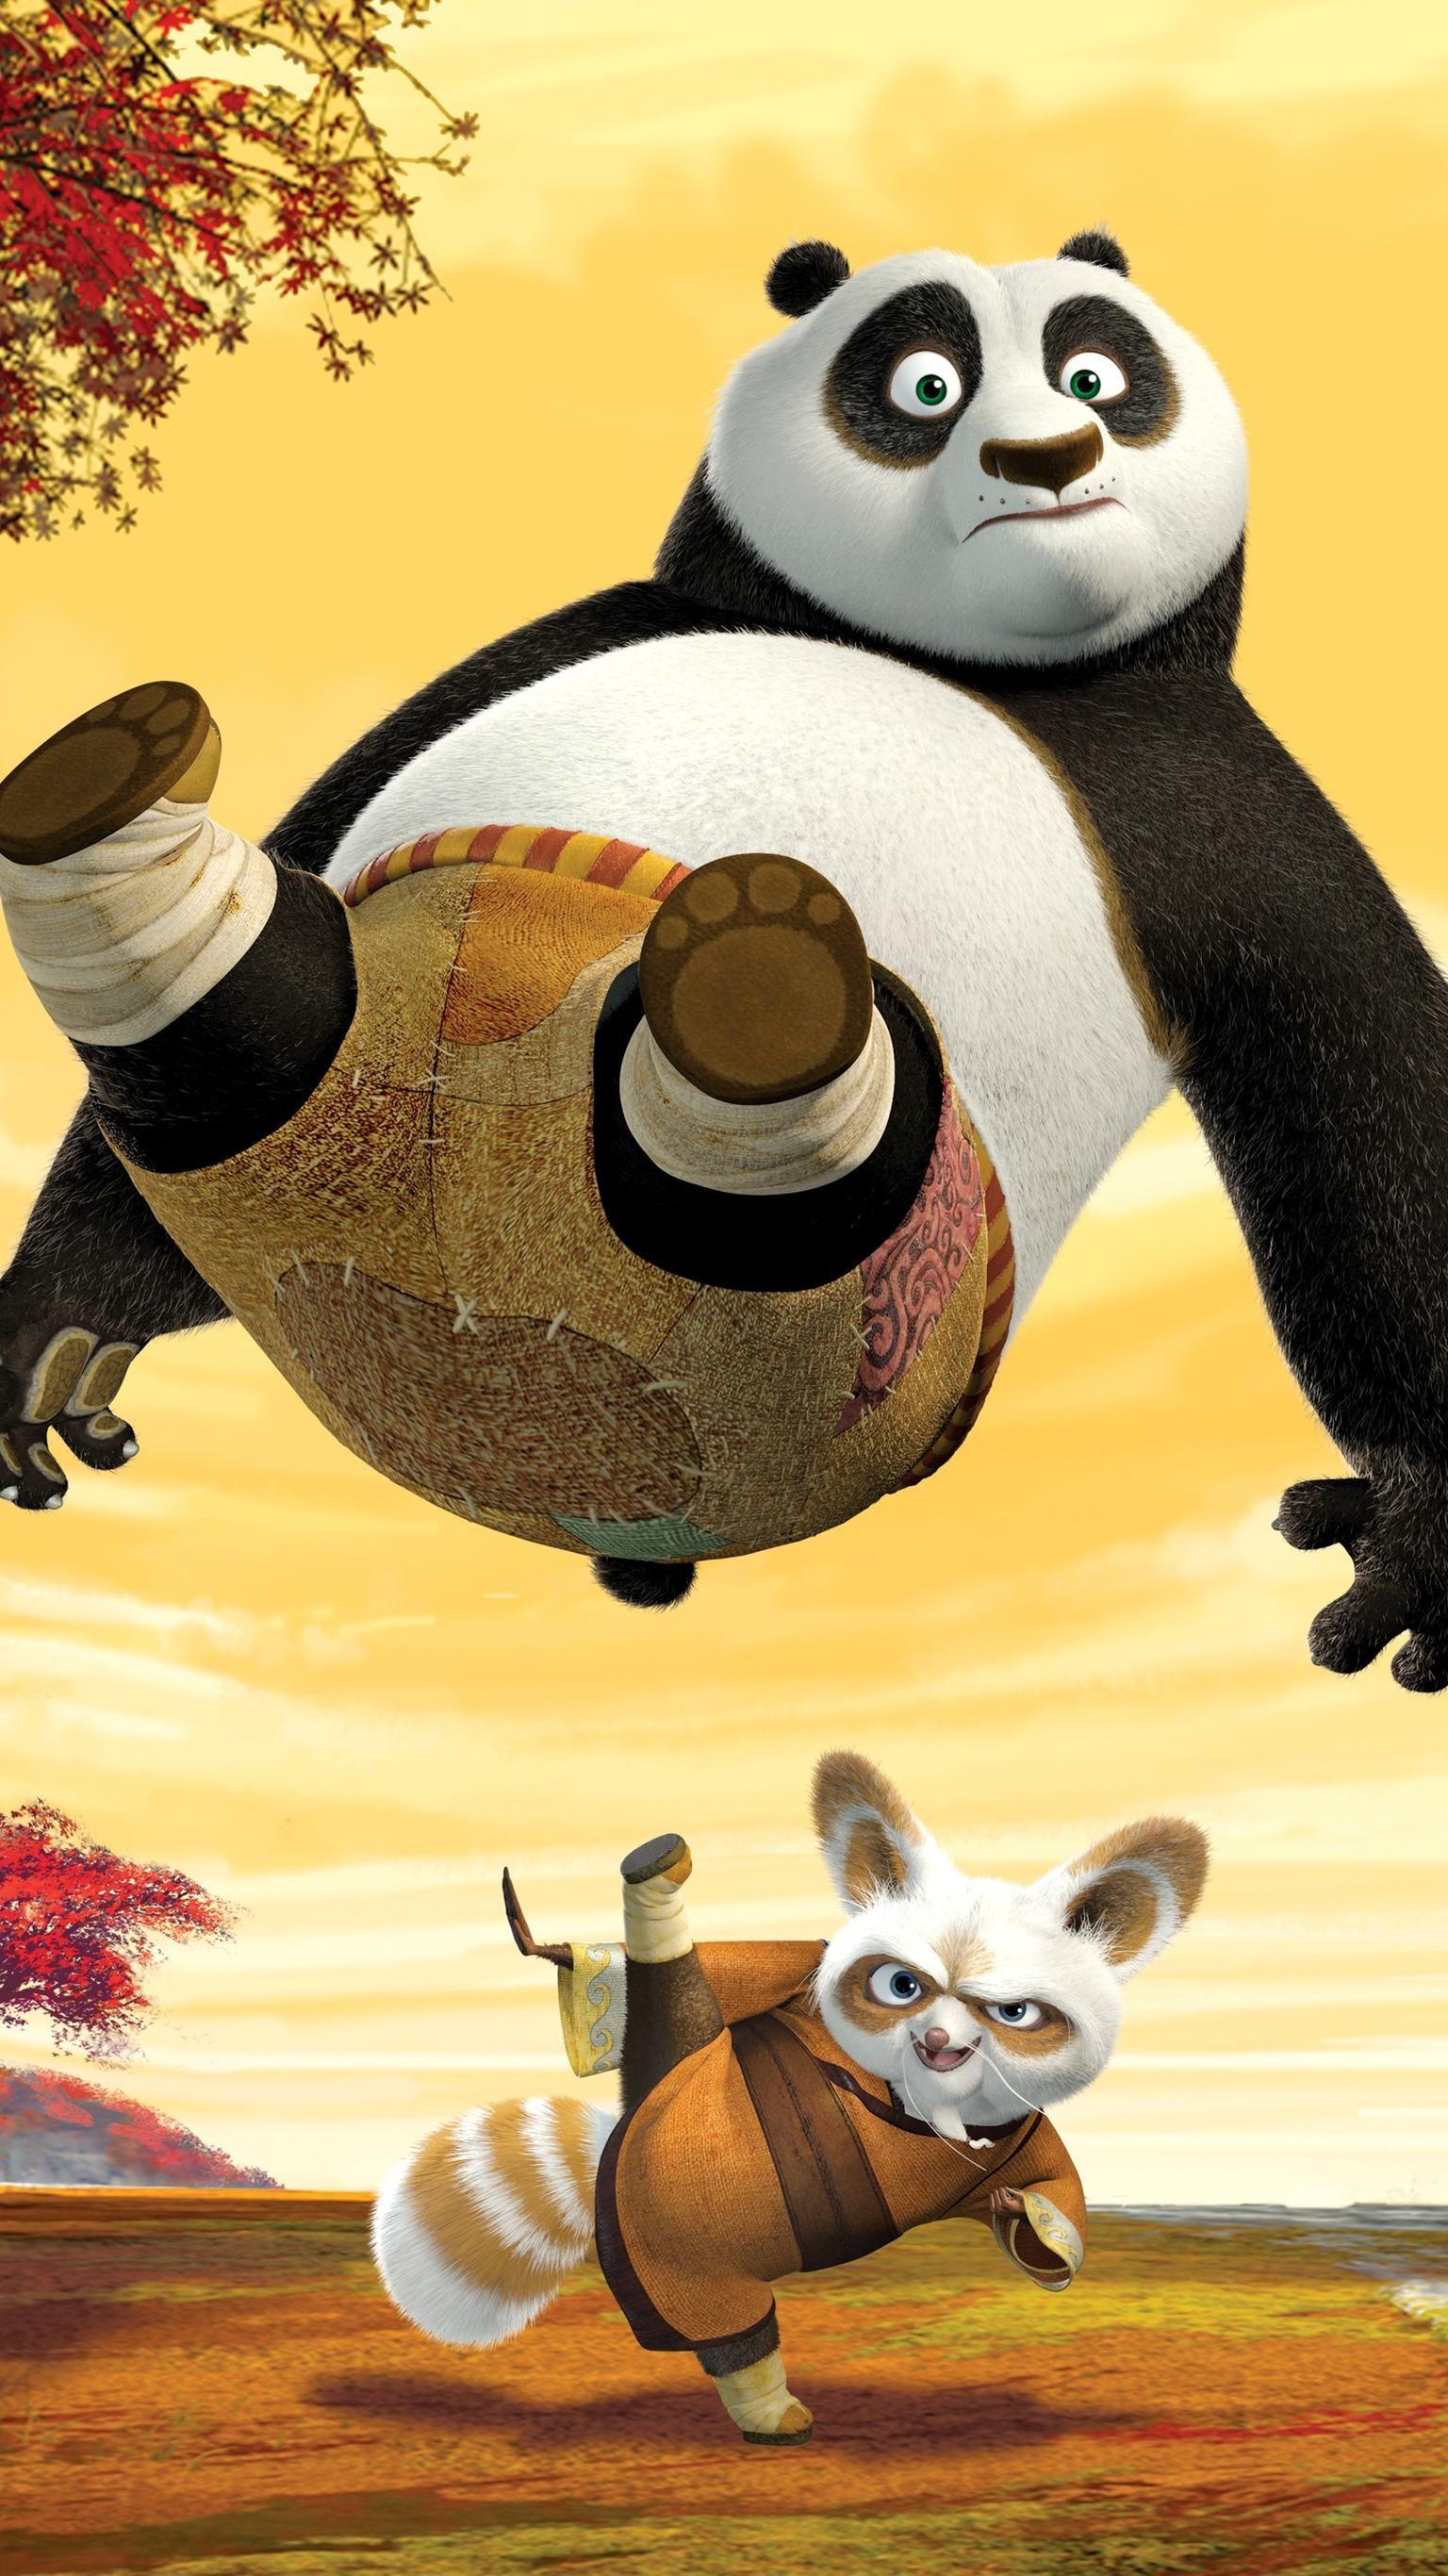 Kung Fu Panda (2008) Phone Wallpaper. Panda wallpaper